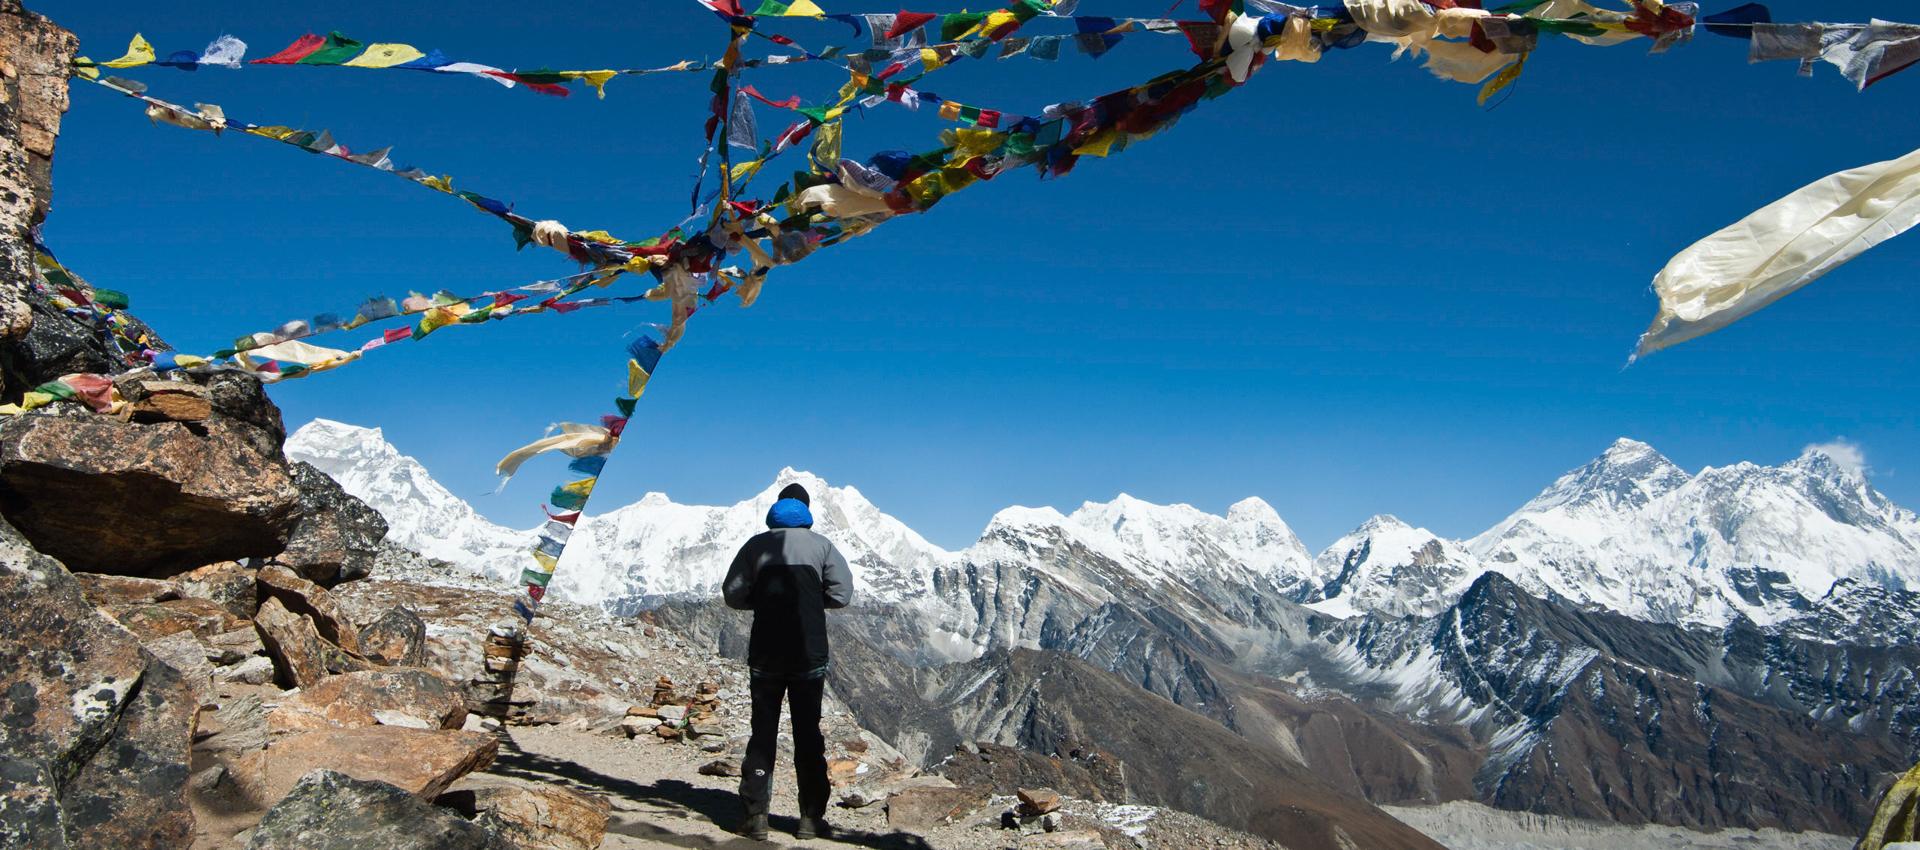 Le camp de base de l'Everest par les hauts cols